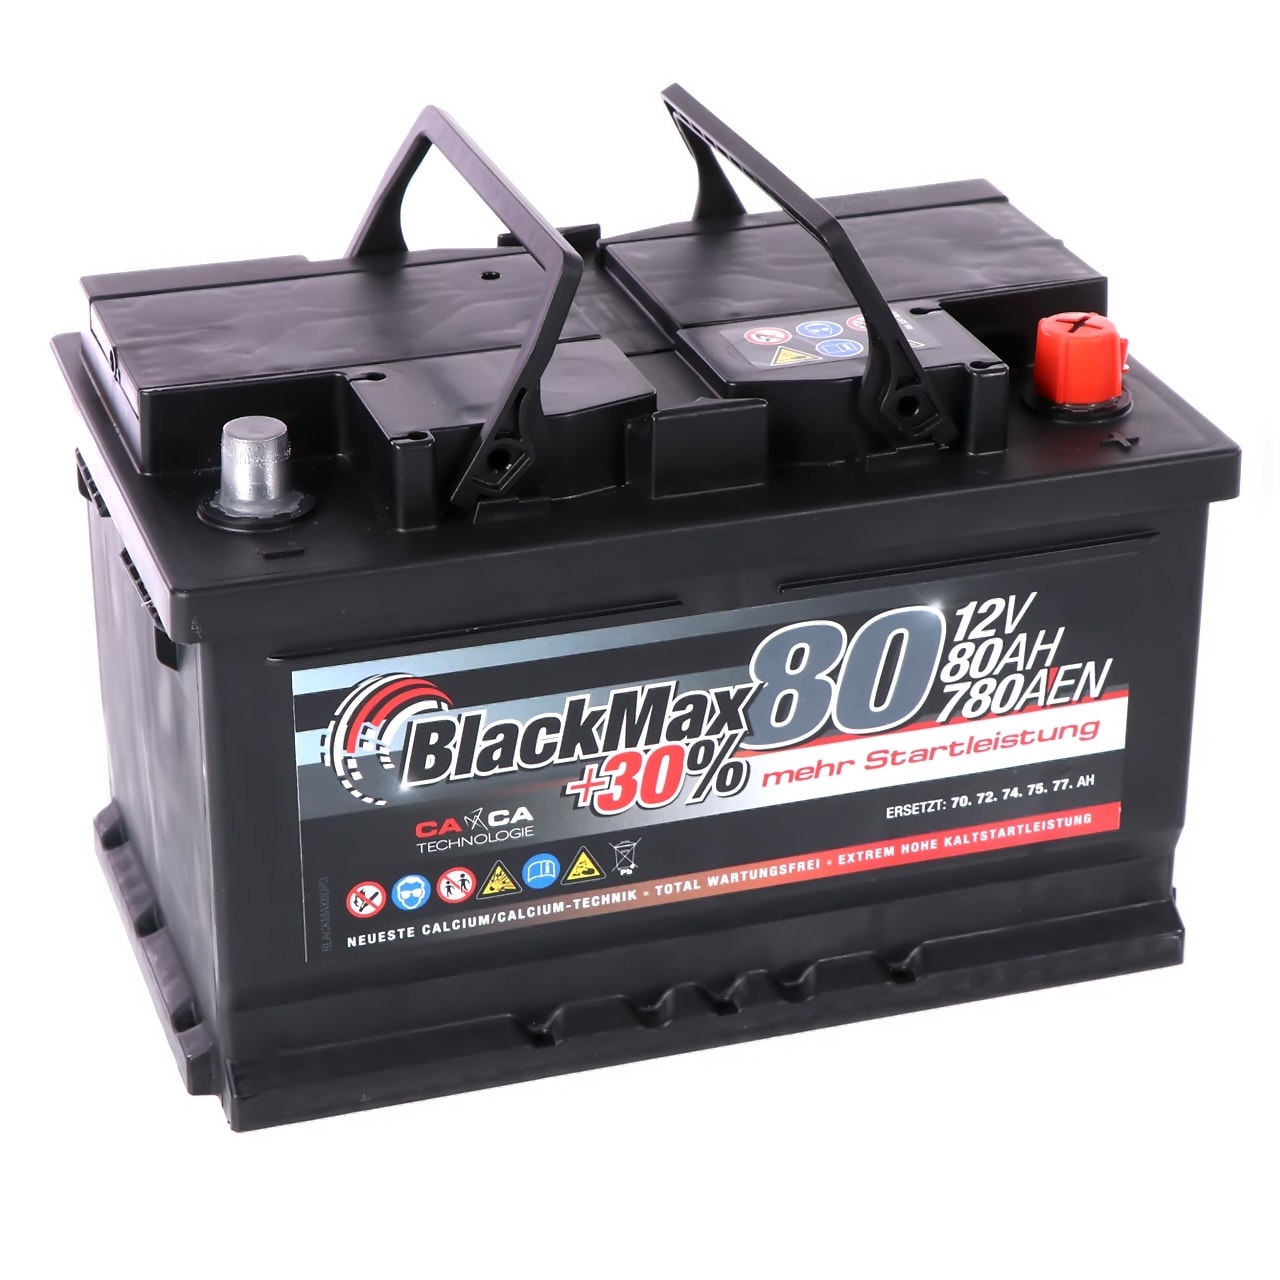 Tokohama Autobatterie 100AH 12V, 77,90 €